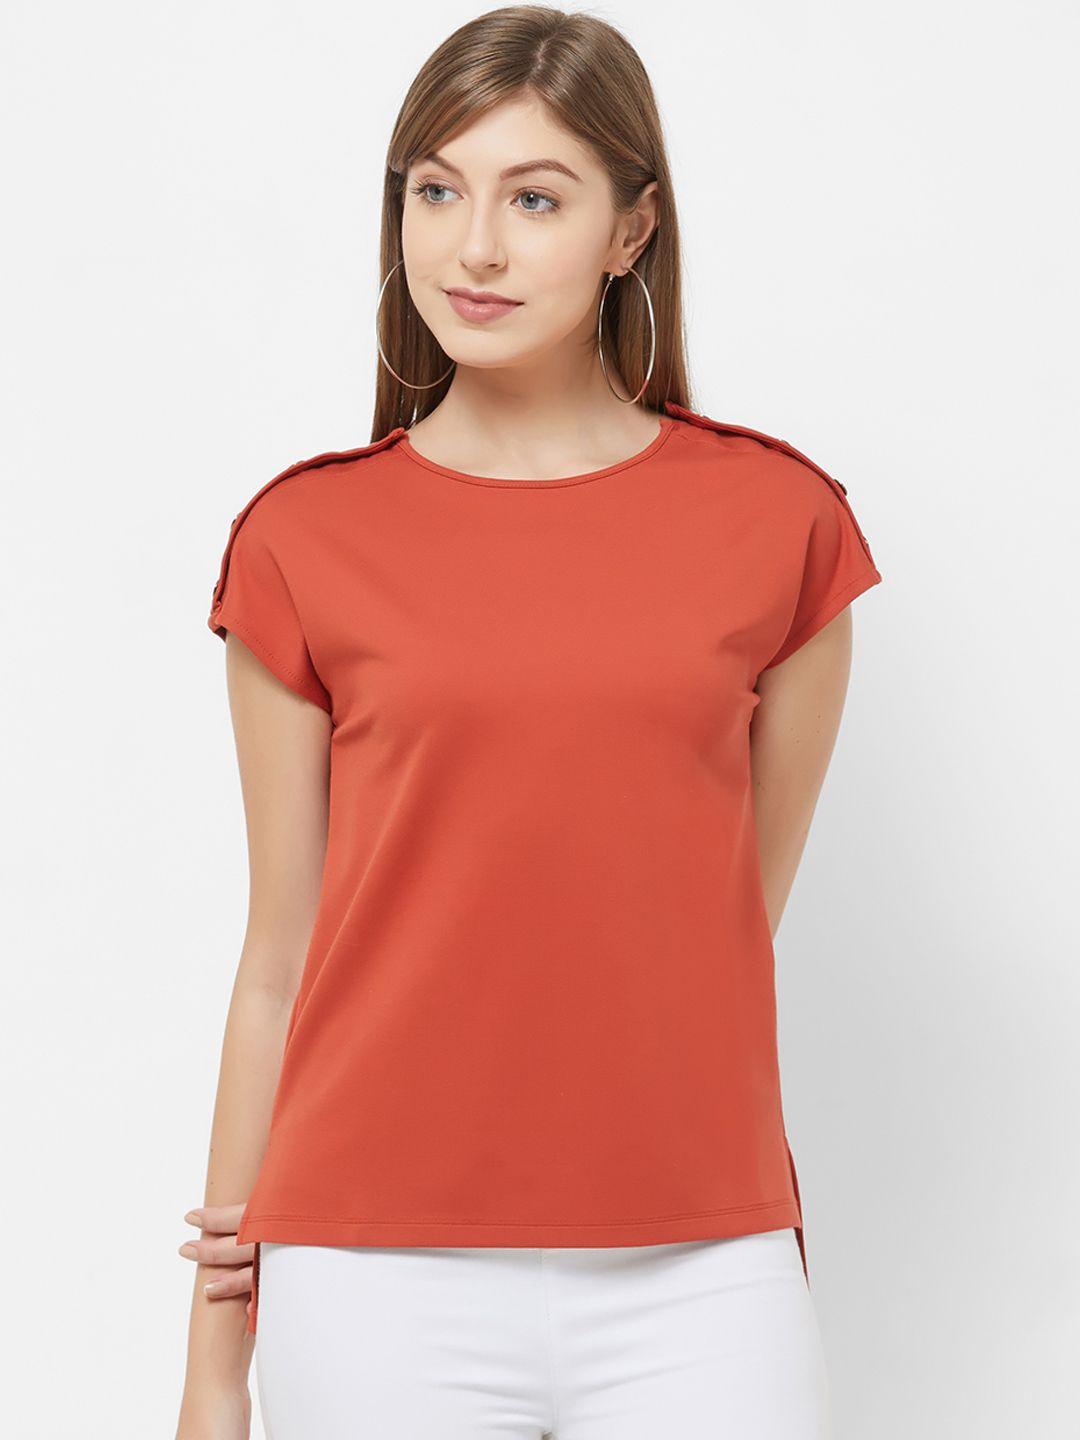 109f-women-rust-orange-solid-top